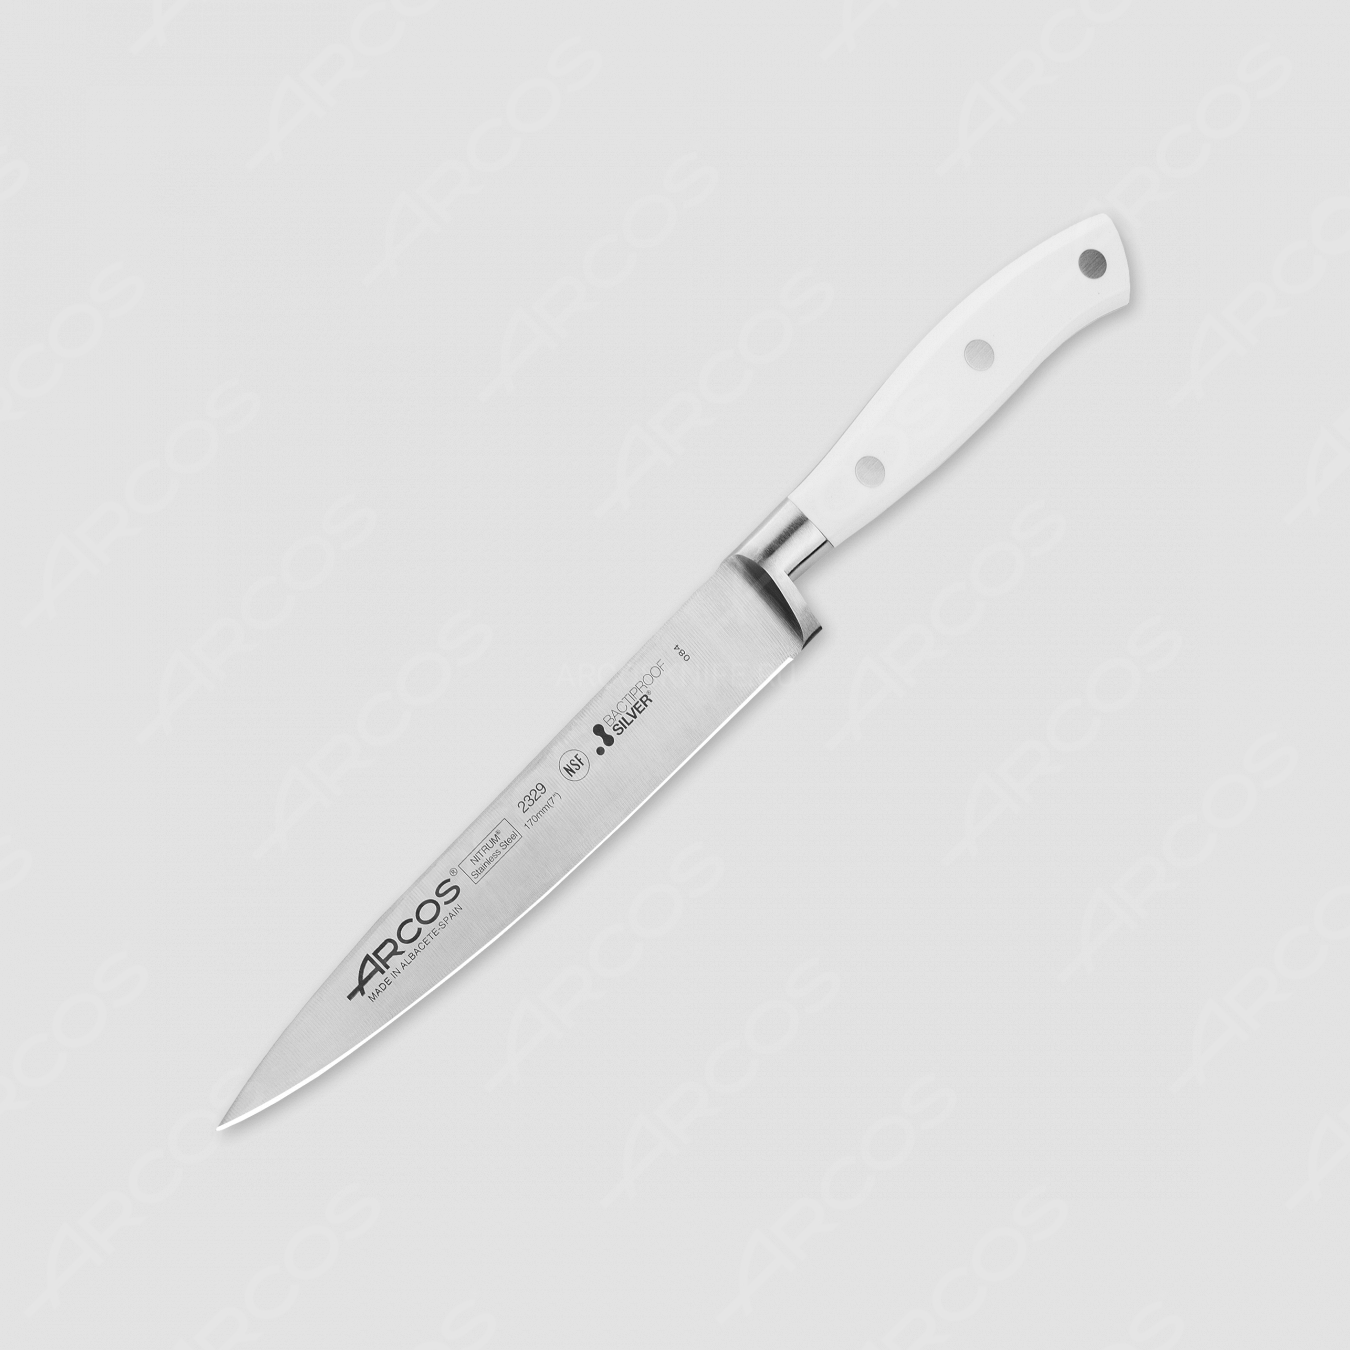 Нож кухонный для нарезки филе 17 см, серия Riviera Blanca, ARCOS, Испания